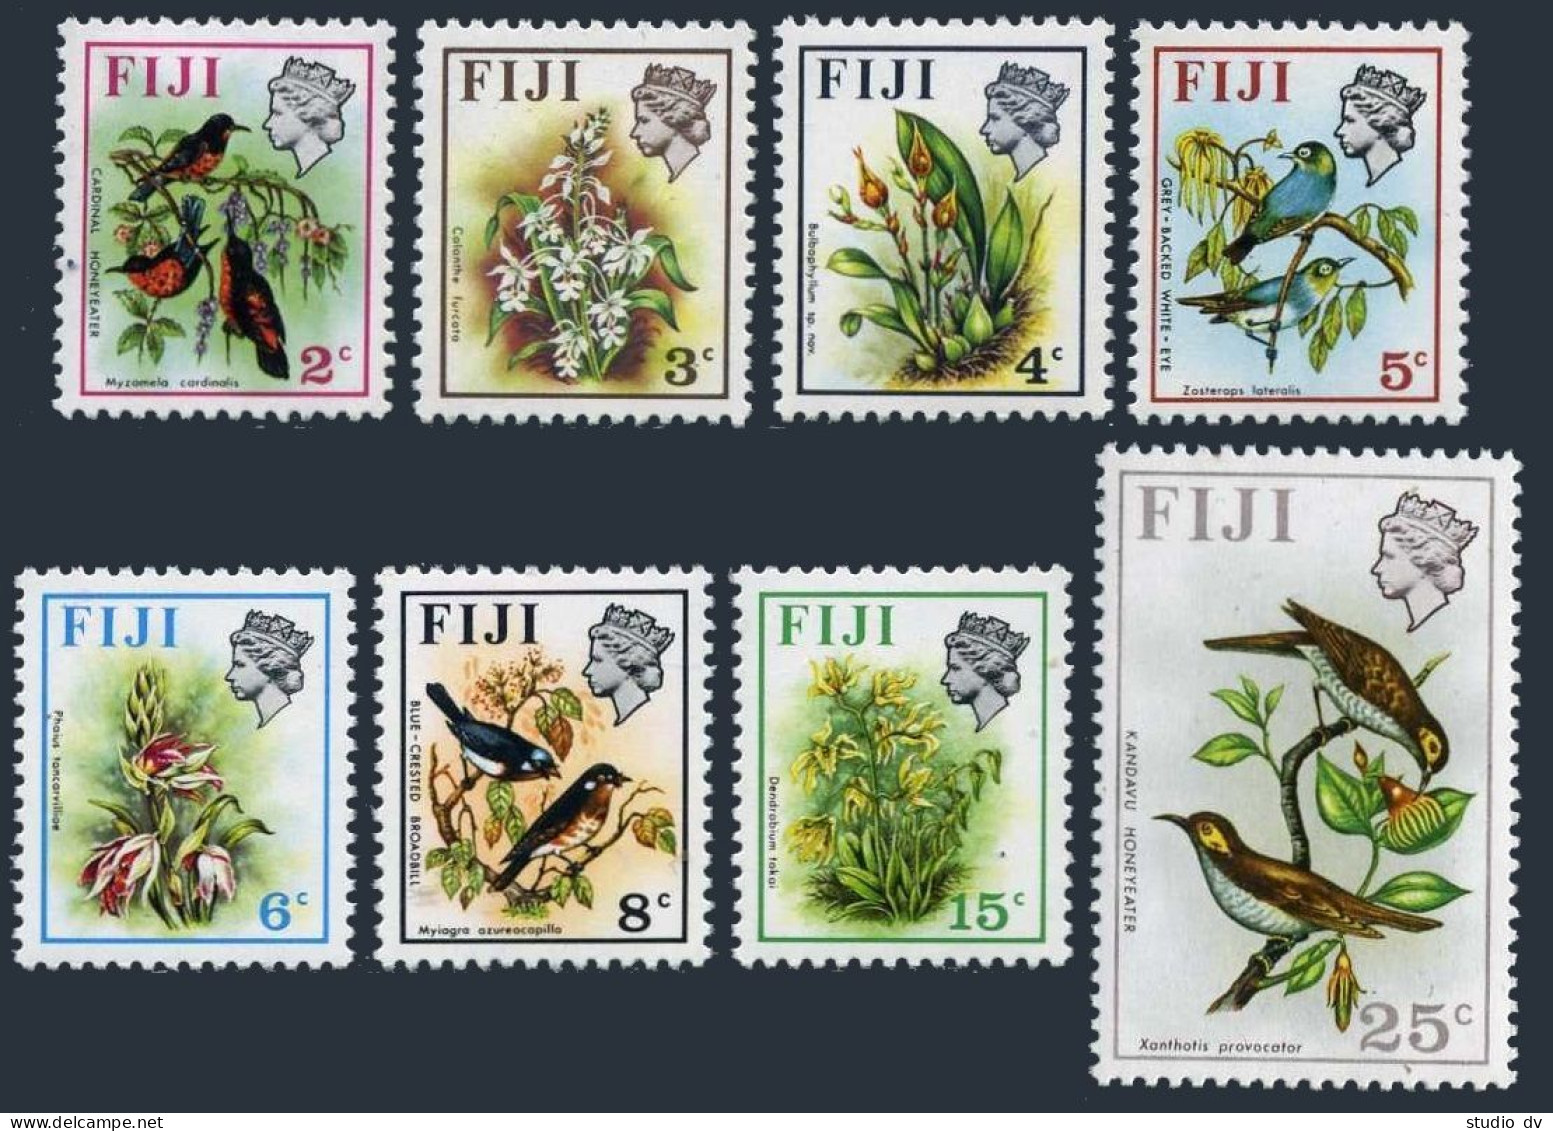 Fiji 306c-313a, 315a, 8 Stamps Wmk 314 Sideways, MNH. Birds 1973. - Fidji (1970-...)